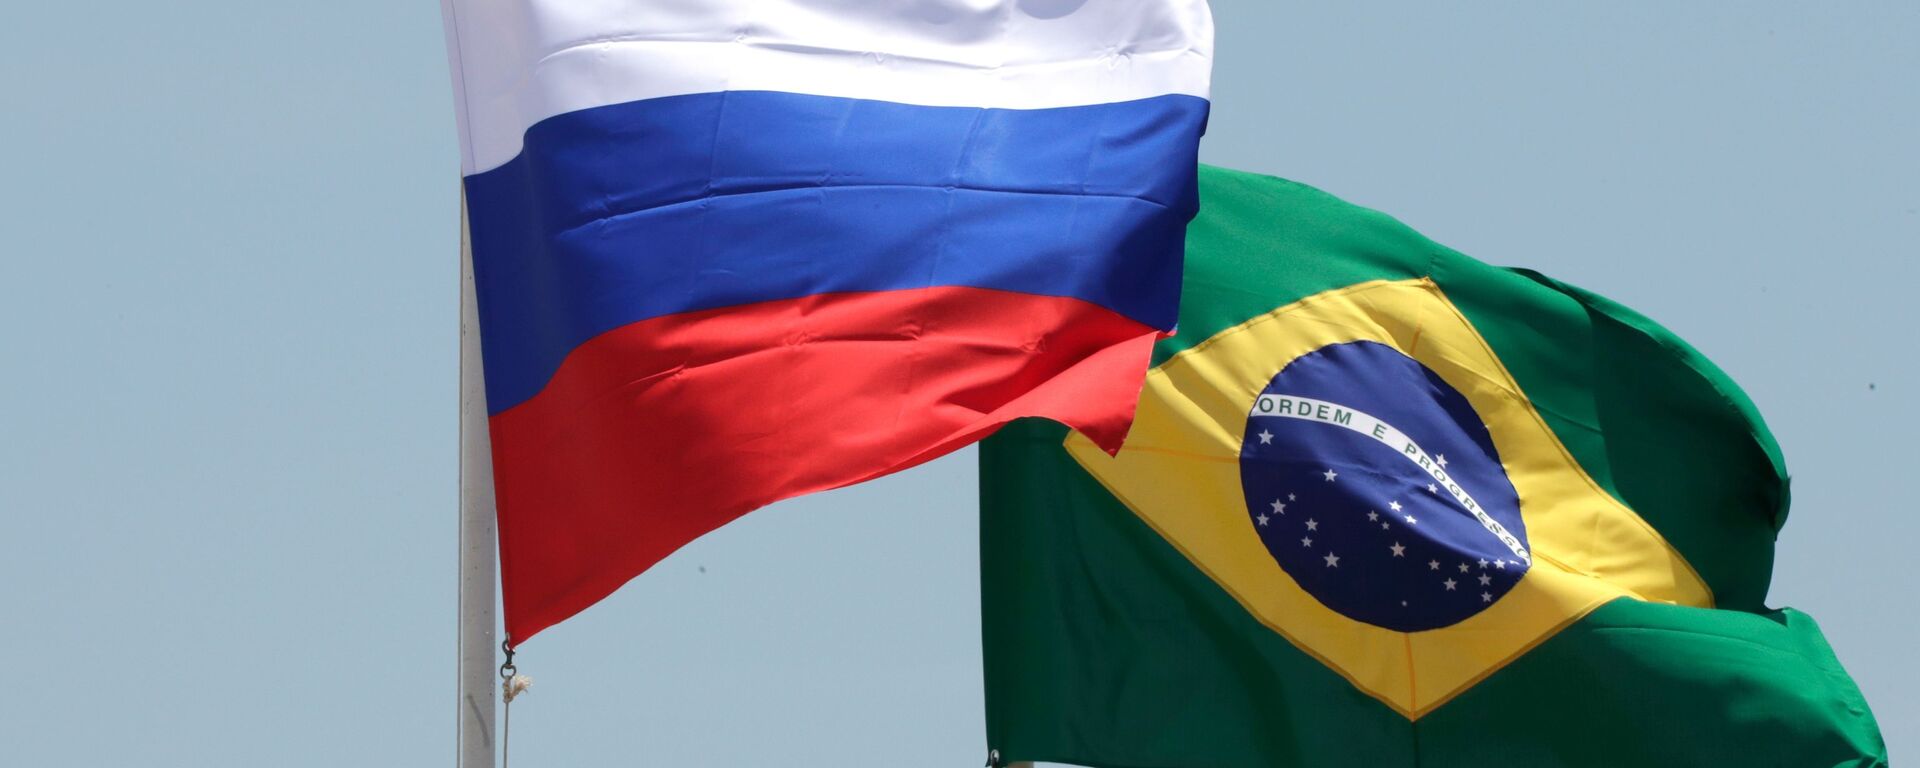 Las banderas de Brasil y Rusia - Sputnik Mundo, 1920, 02.07.2021